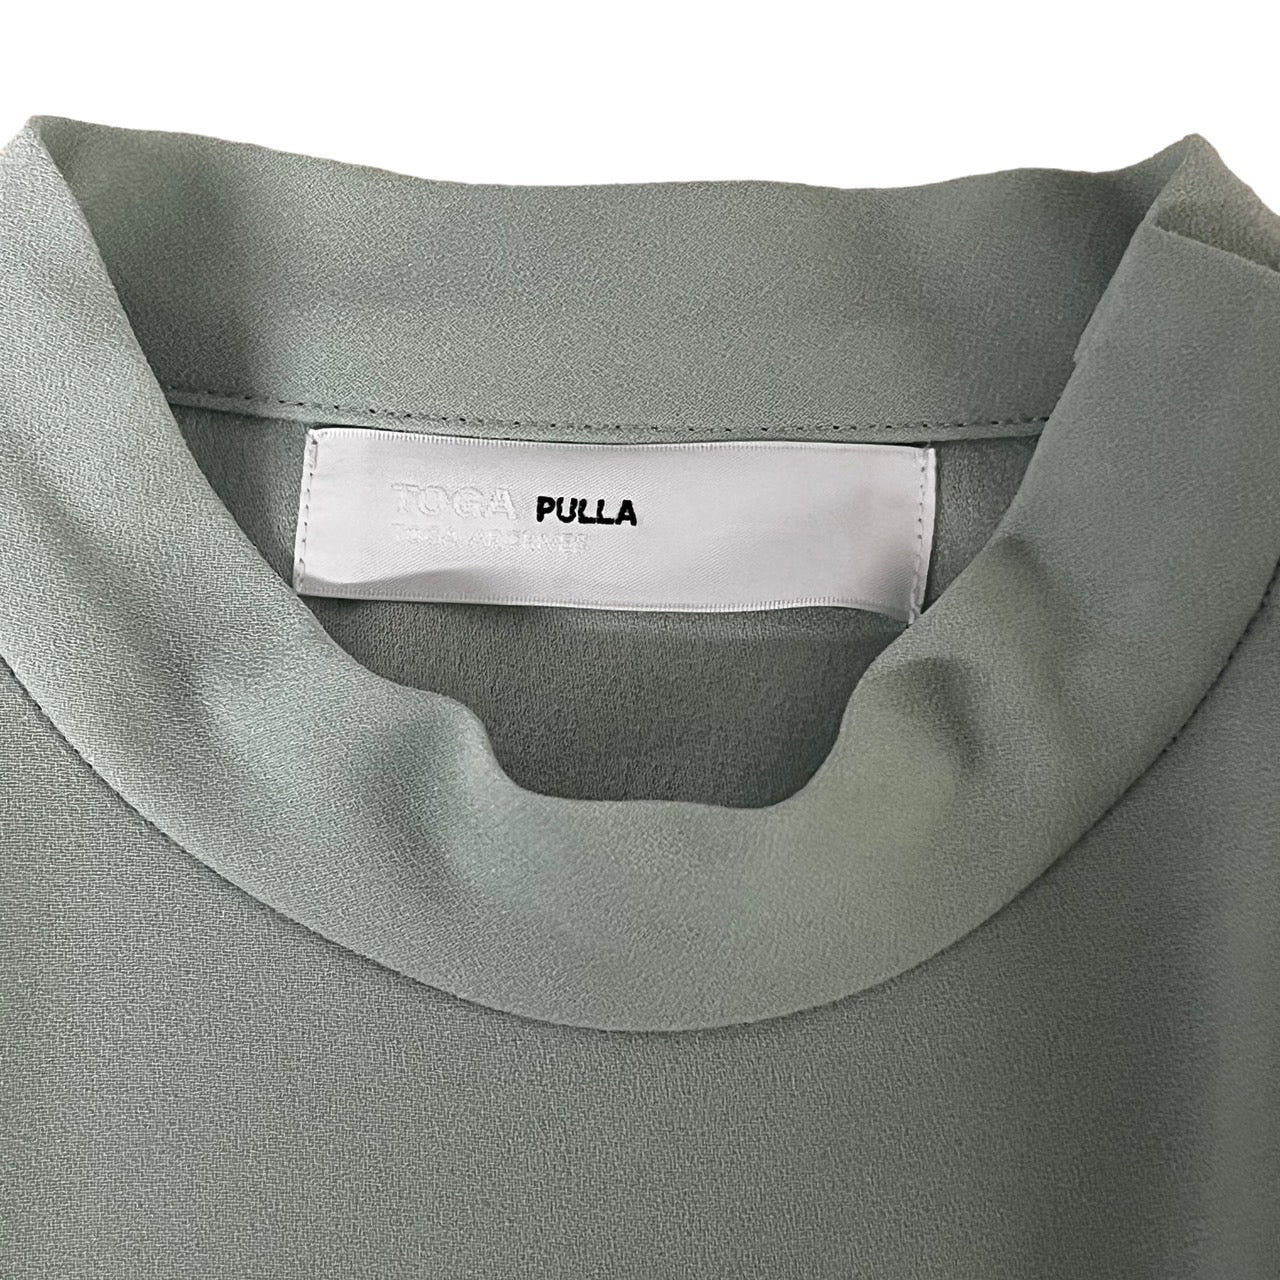 TOGA PULLA(トーガプルラ) mock neck ruffle blouse モック ネック フリル ブラウス カットソー 長袖 ミント グリーン 36(S程度)